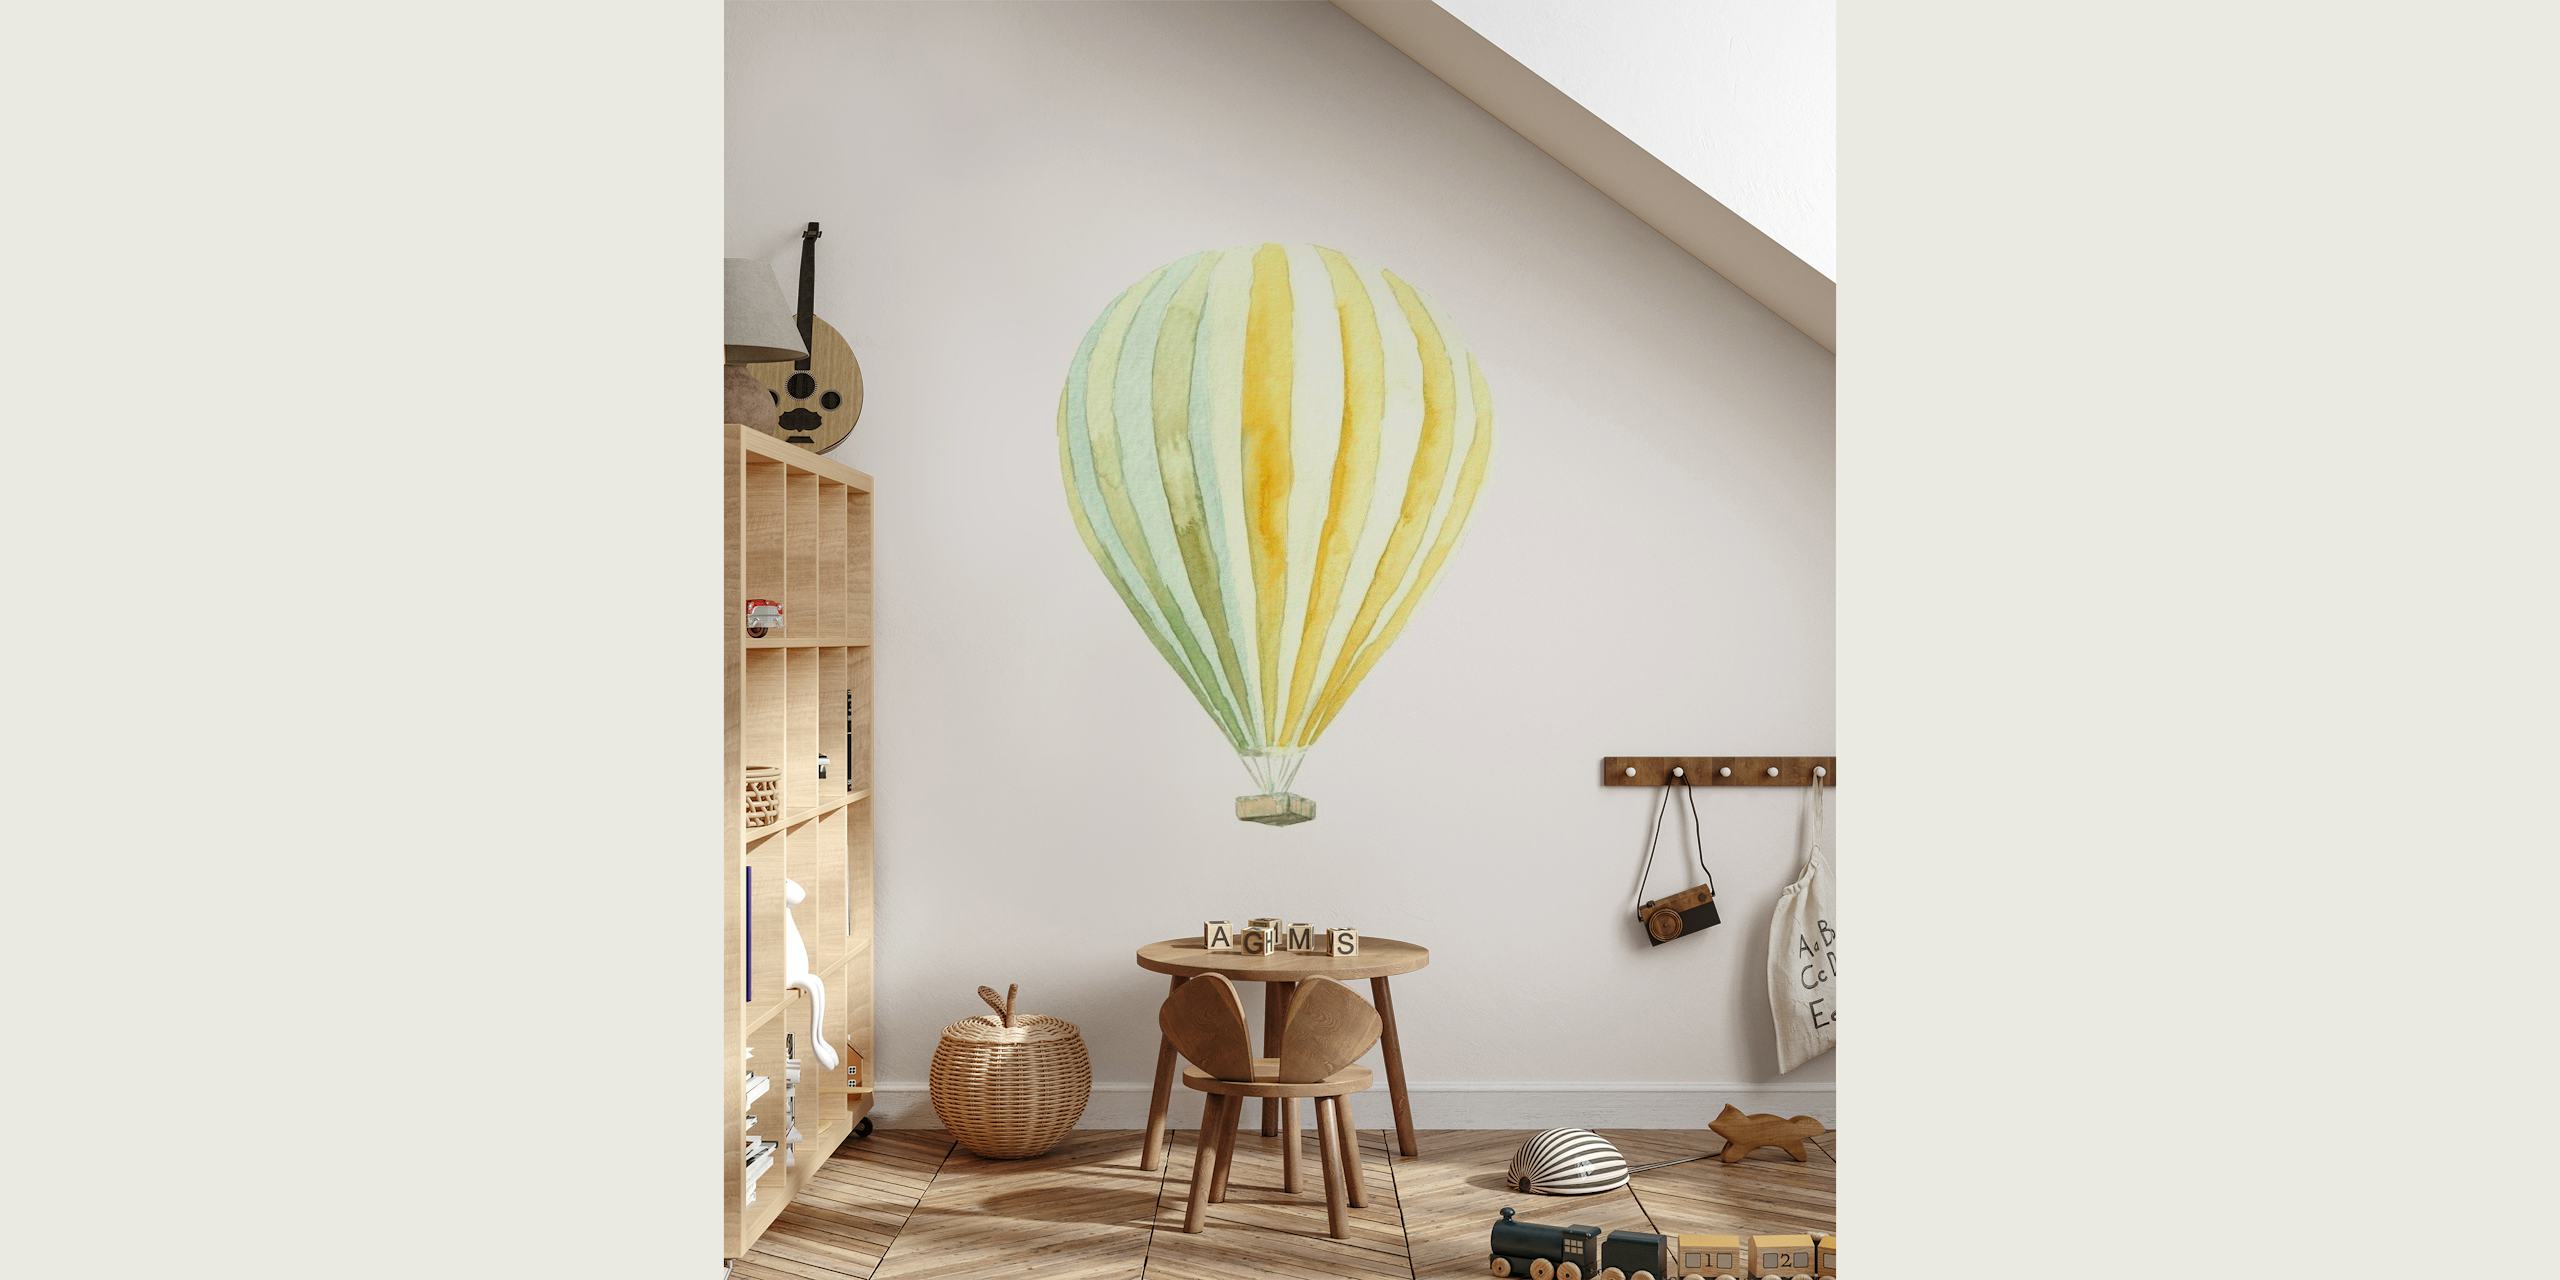 Nursery Room // Balloon tapete